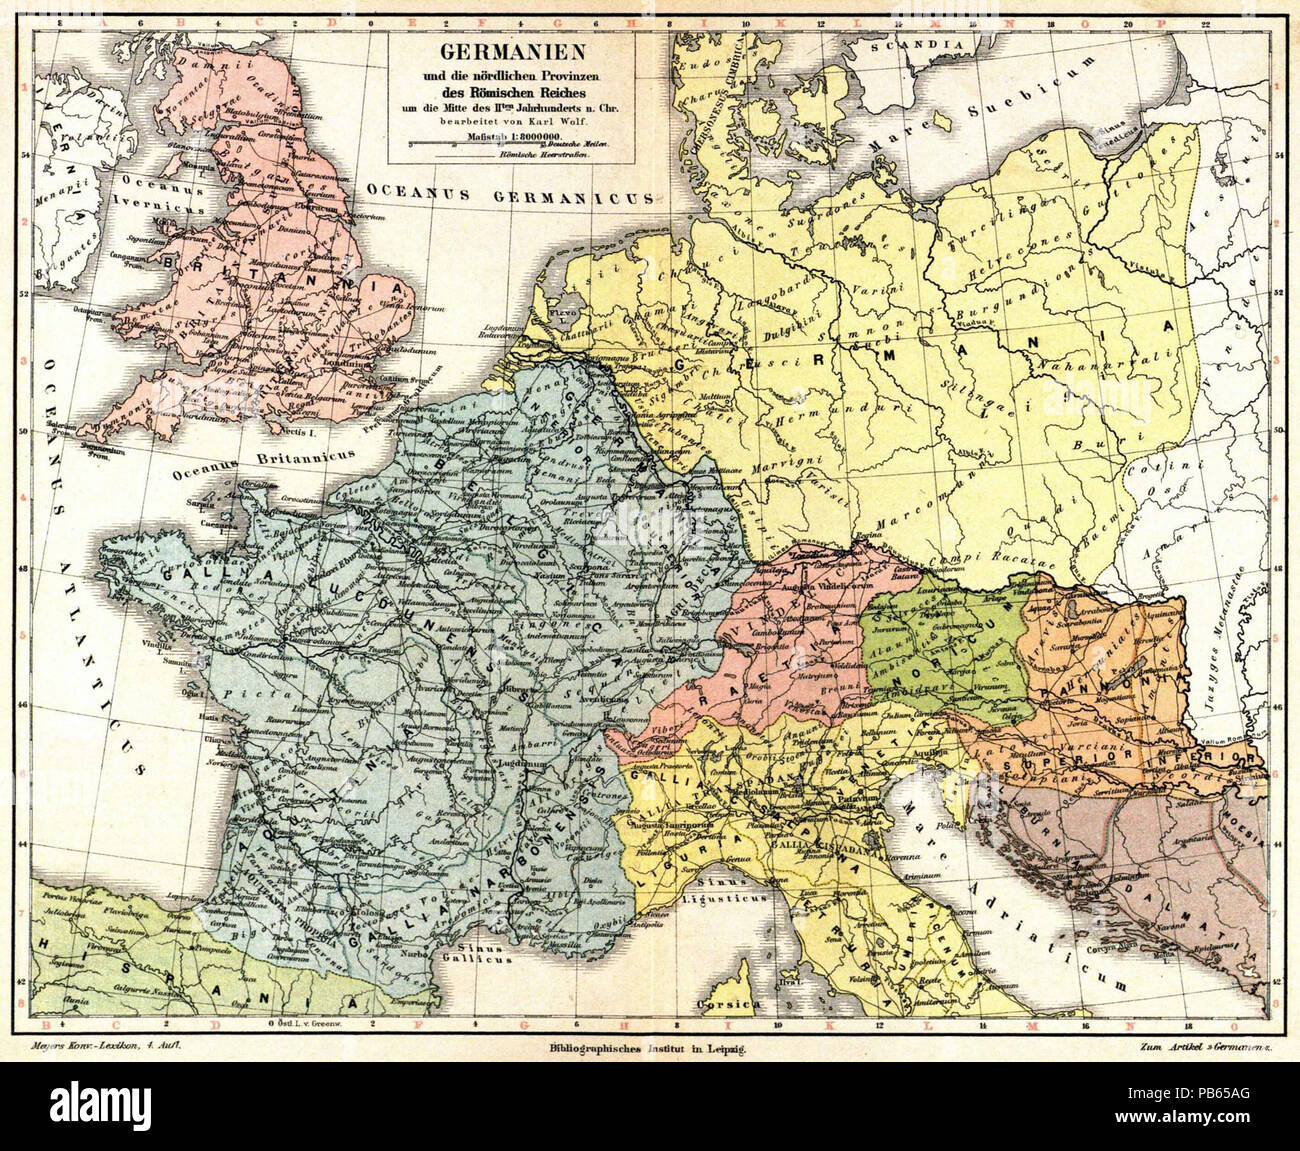 M4 Alte historische Landkarte 1889 Germanien nördl Provinzen Römisches Reich 